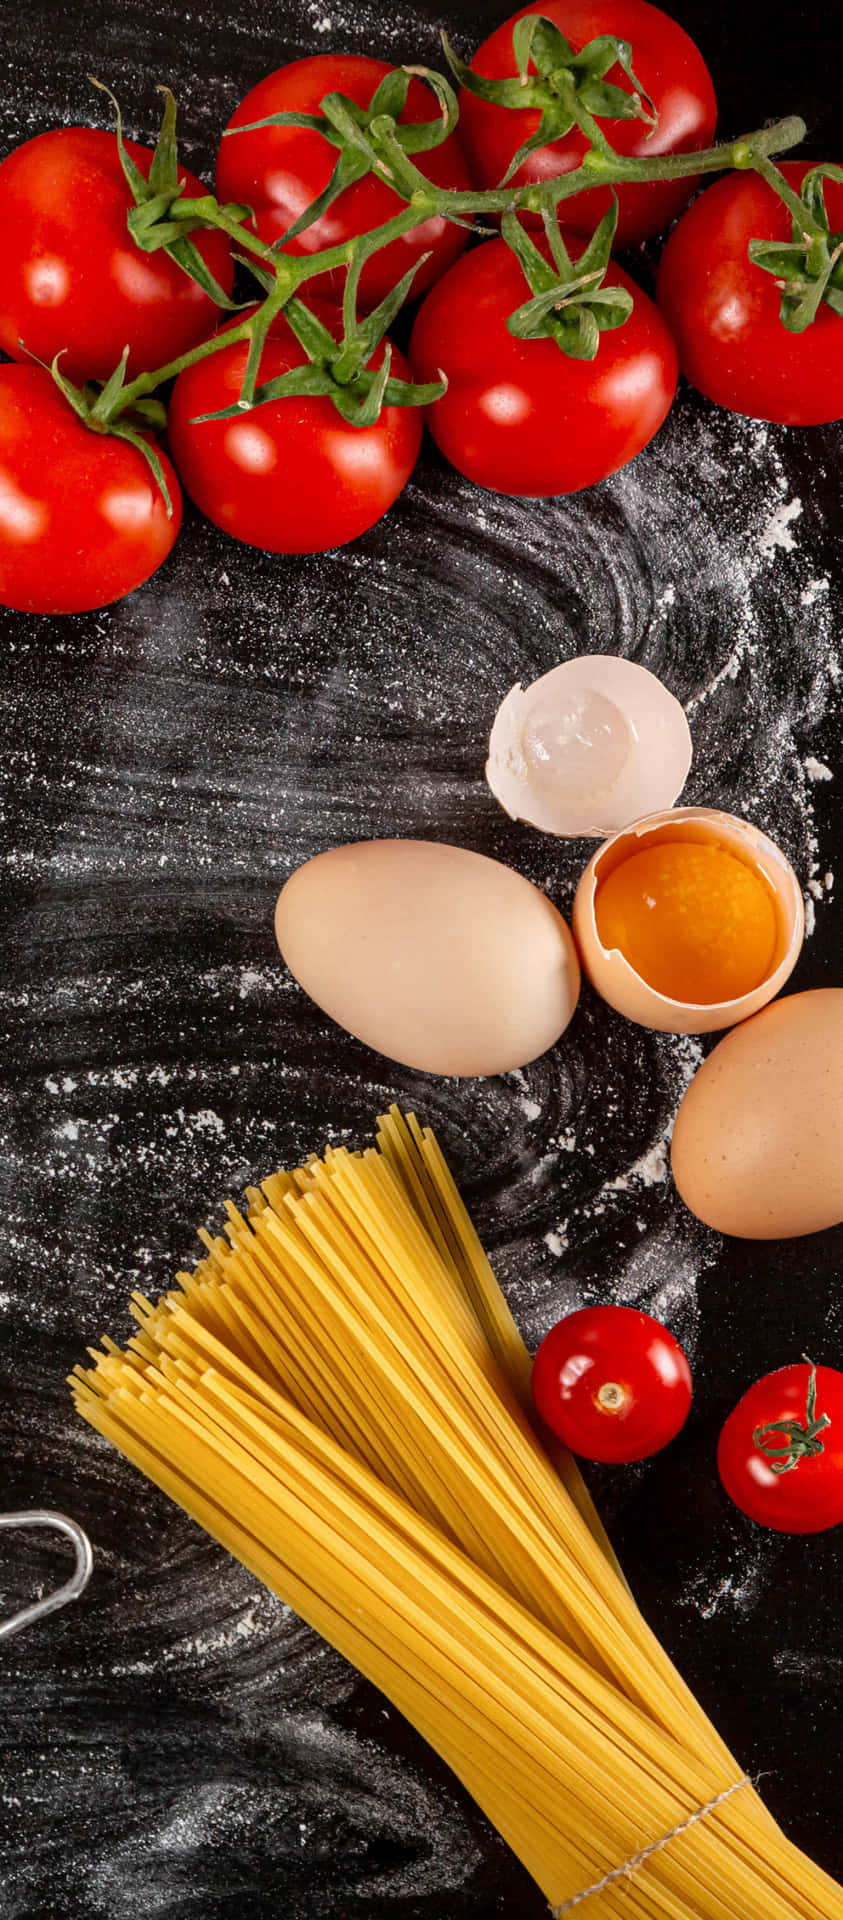 Eintisch Mit Pasta, Eiern, Tomaten Und Anderen Zutaten.